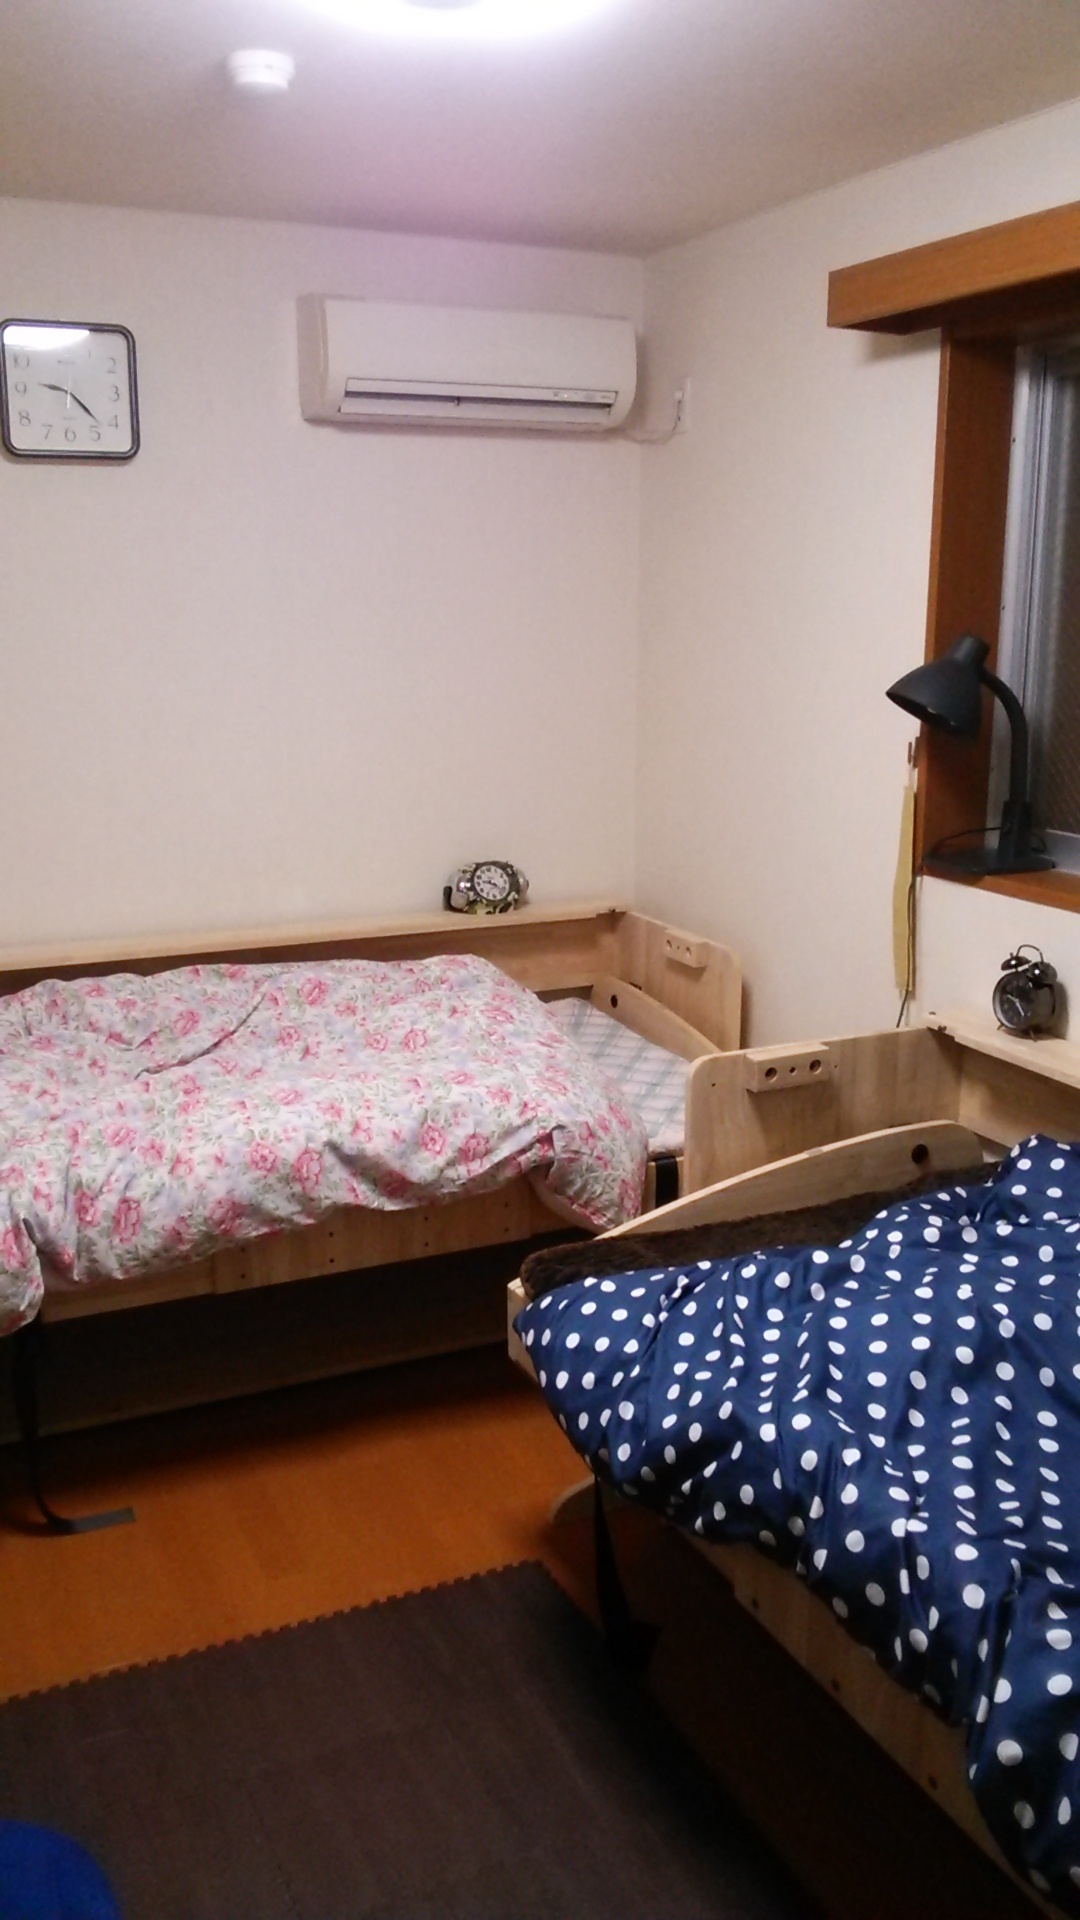 息子の睡眠障害が治りました - 【リノキッズ】二段ベッド・ロフトベッドを超えたベッド一体型学習机